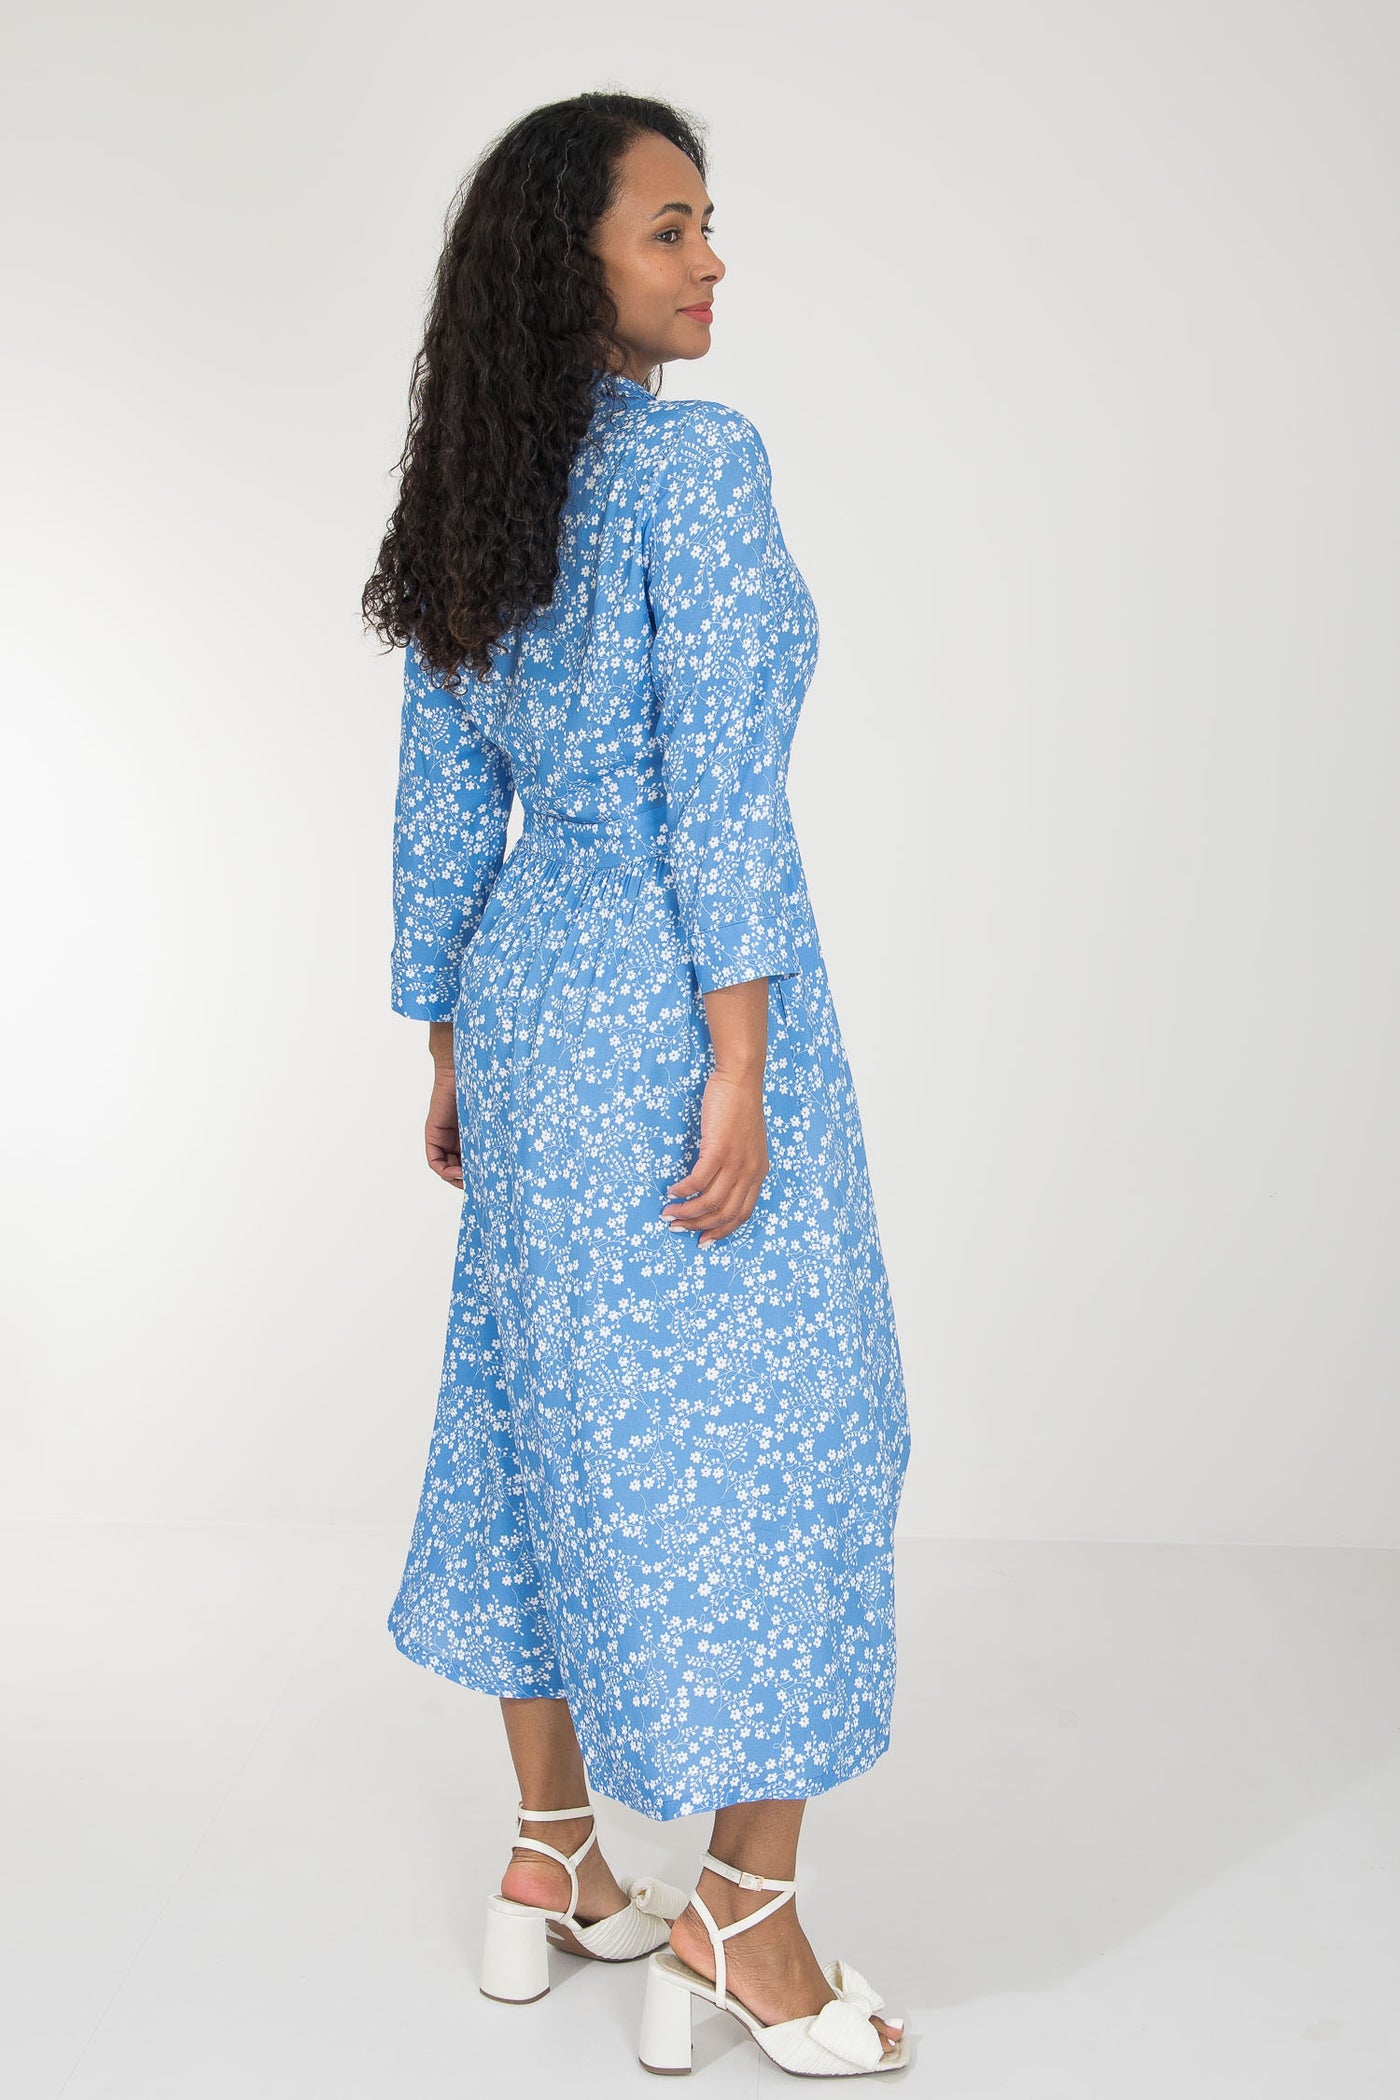 Pure EcoVero woven viscose midi dress - Blue flowers - Blåmönstrad, vadlång skjortklänning